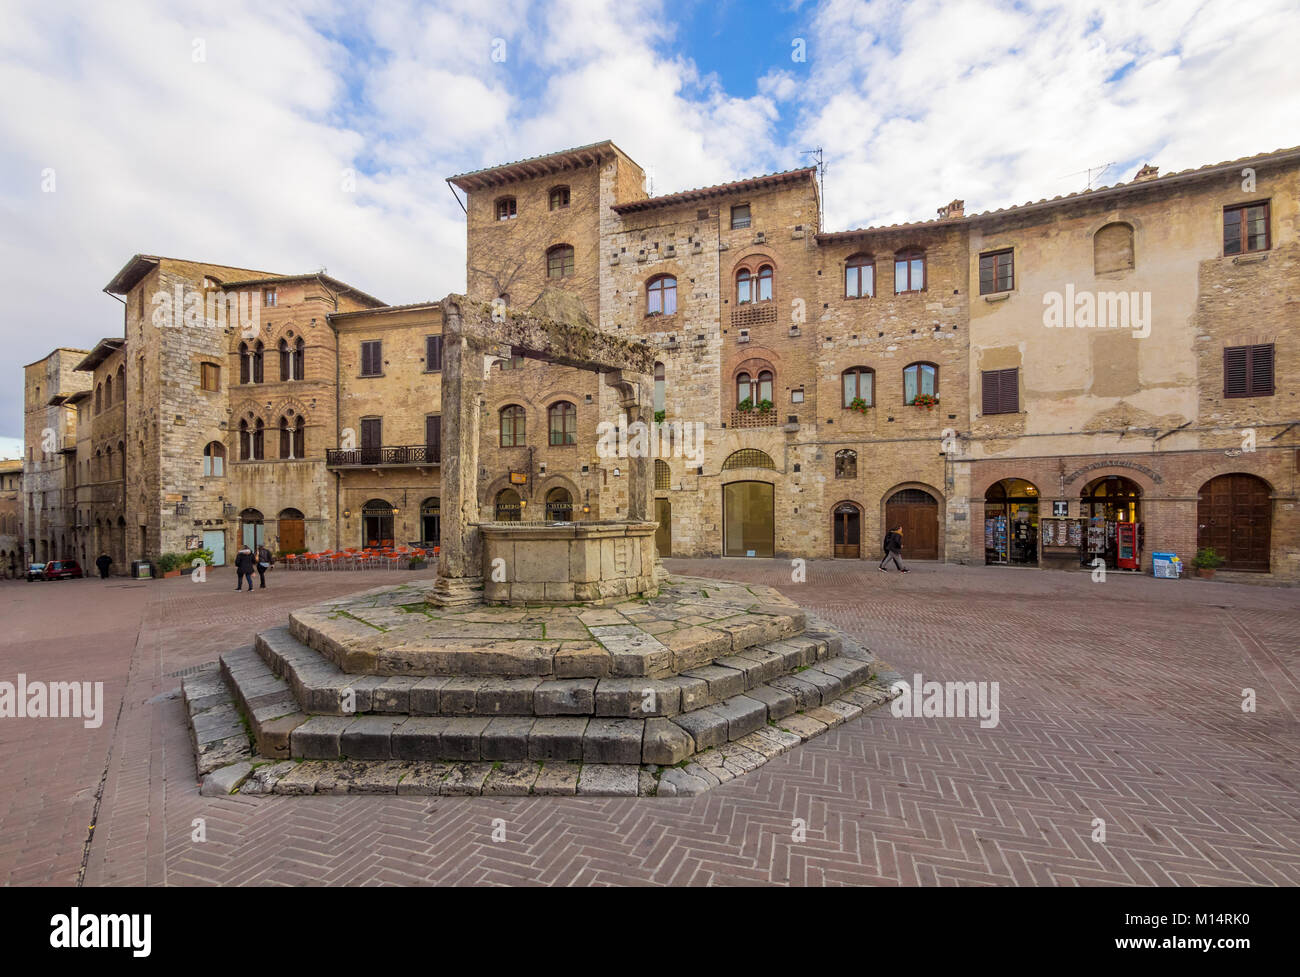 San Gimignano (Italia) - Il famoso piccolo medievale fortificata città collinare della provincia di Siena Toscana. Conosciuta come la Manhattan medioevale. Foto Stock